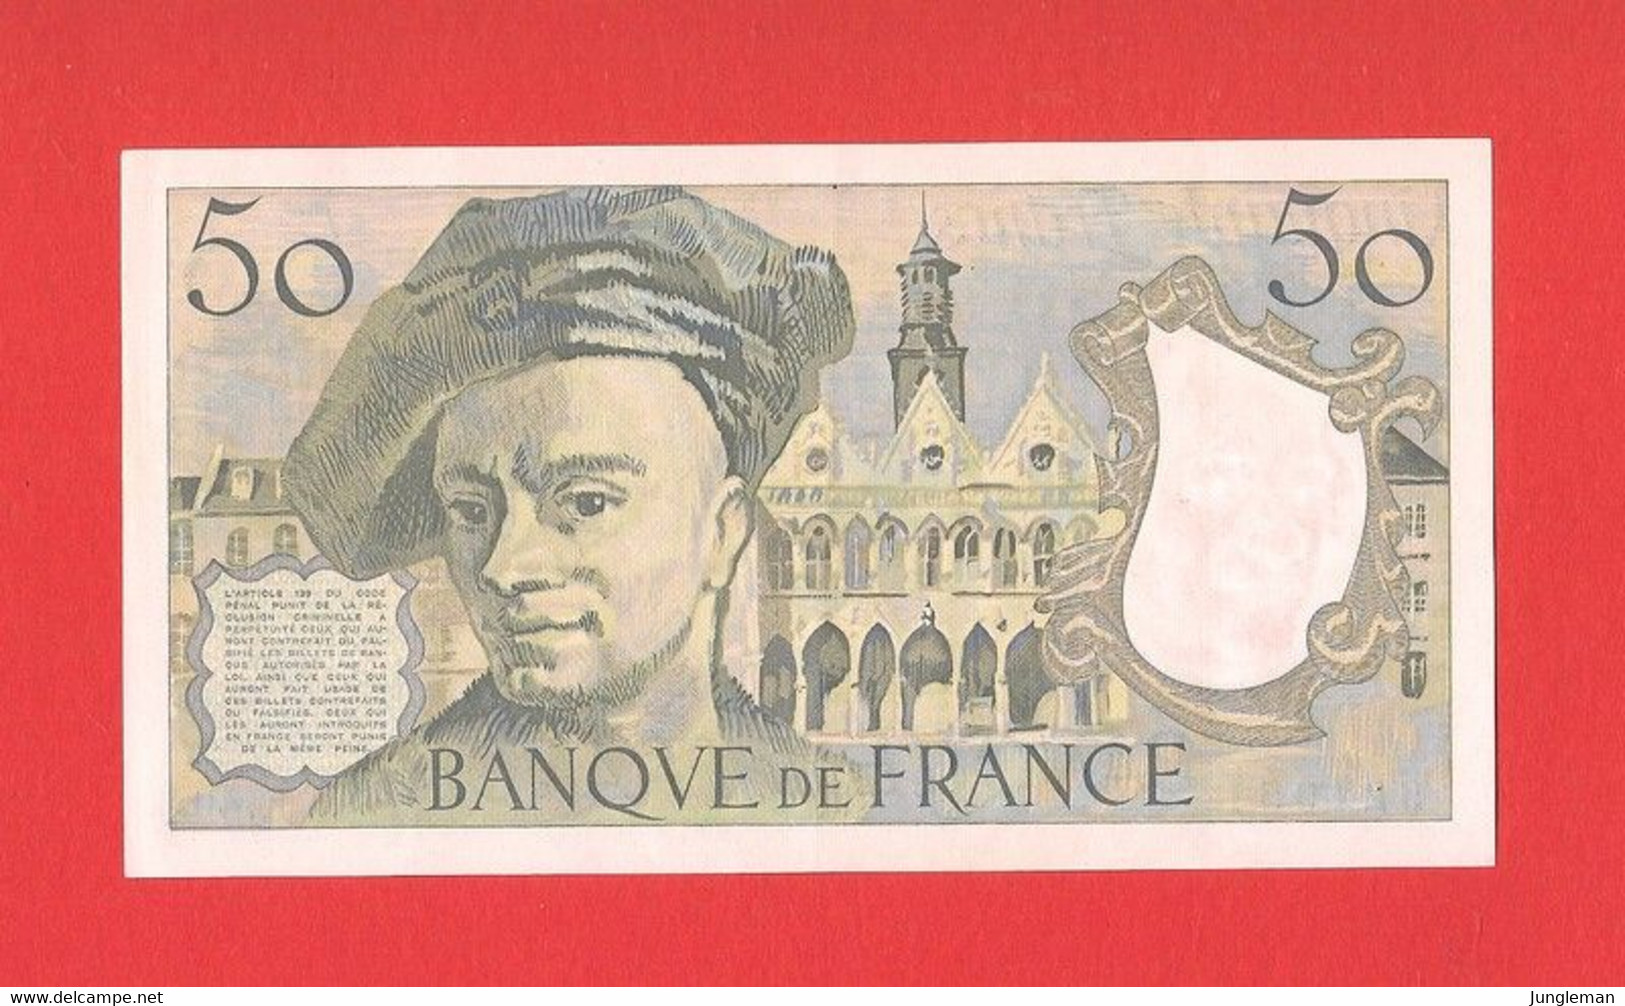 50 Francs Quentin De La Tour - K.40 N° 521952 - 1984 - Léger Pli. Pas De Trous D'épingle, Ni Déchirure. Presque Neuf - 50 F 1976-1992 ''Quentin De La Tour''